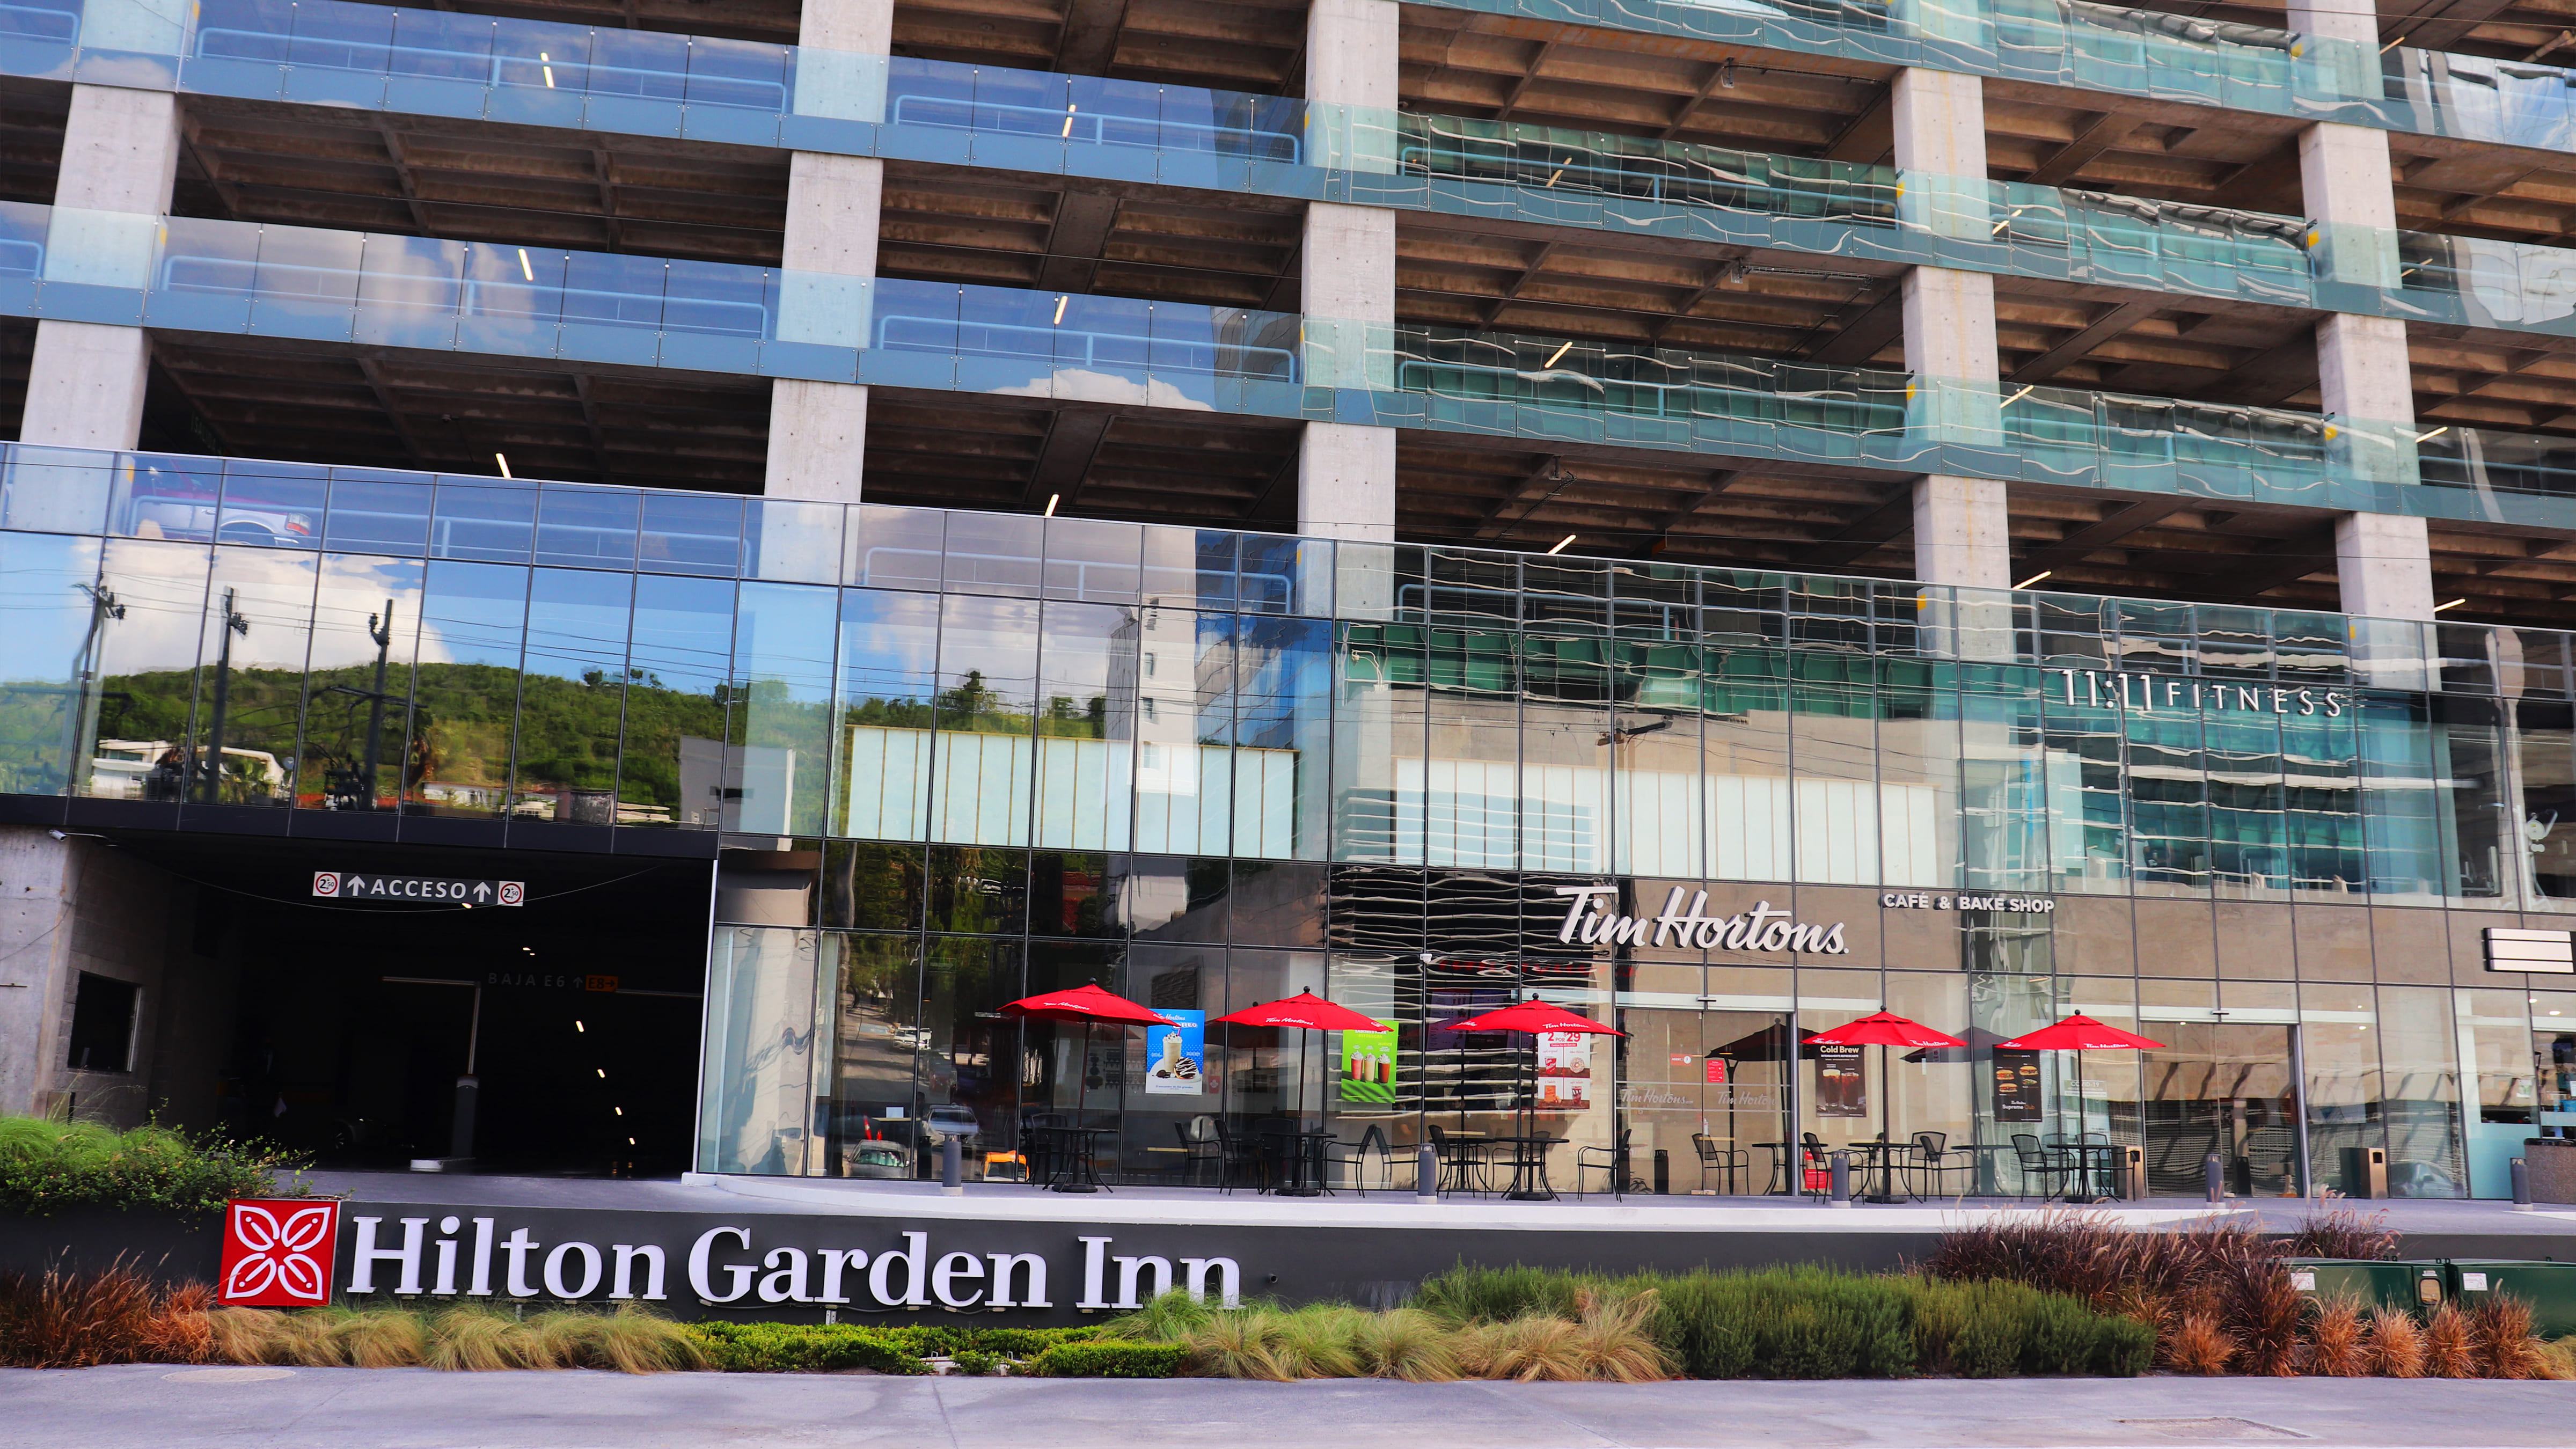 Hilton Garden Inn (Torre T.OP)